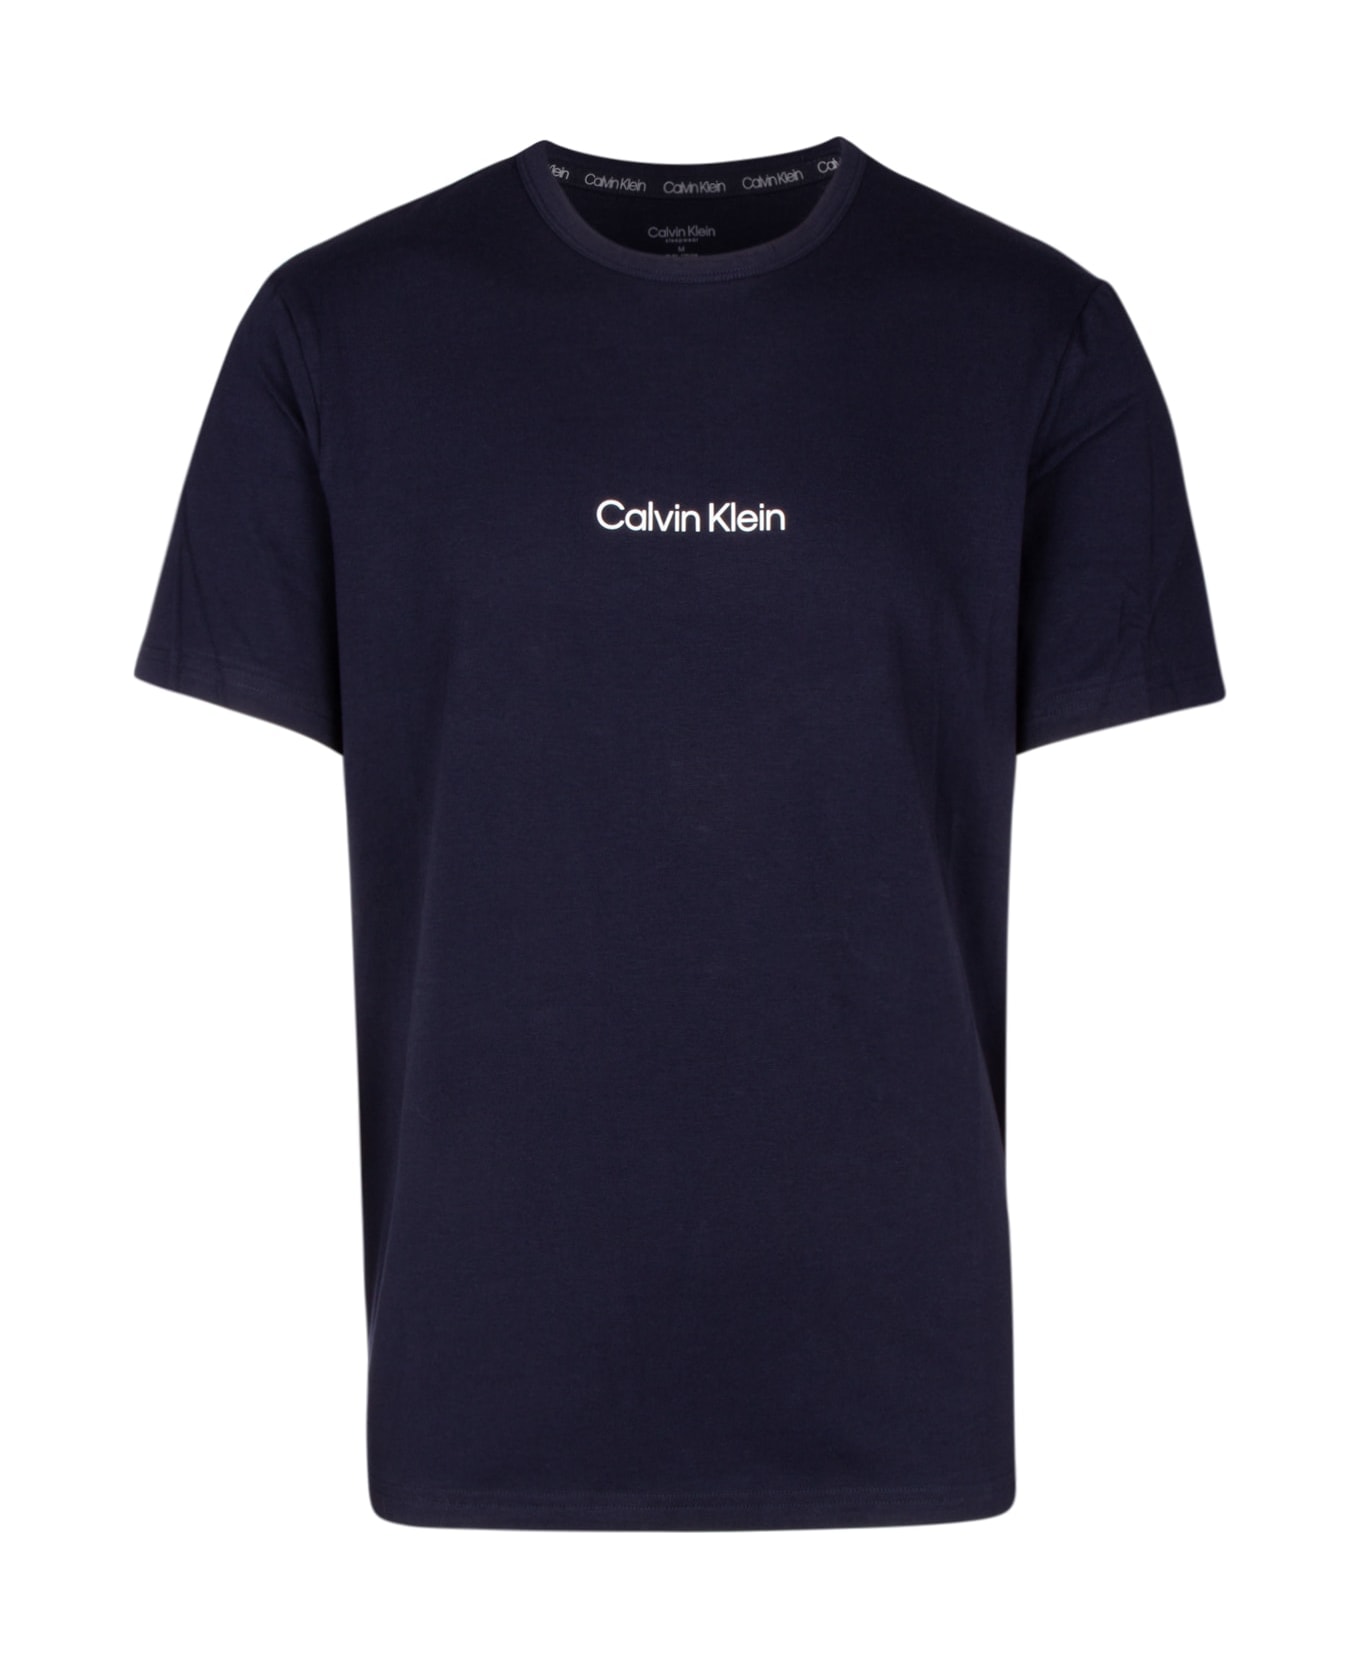 Calvin Klein T-shirt - CHW シャツ